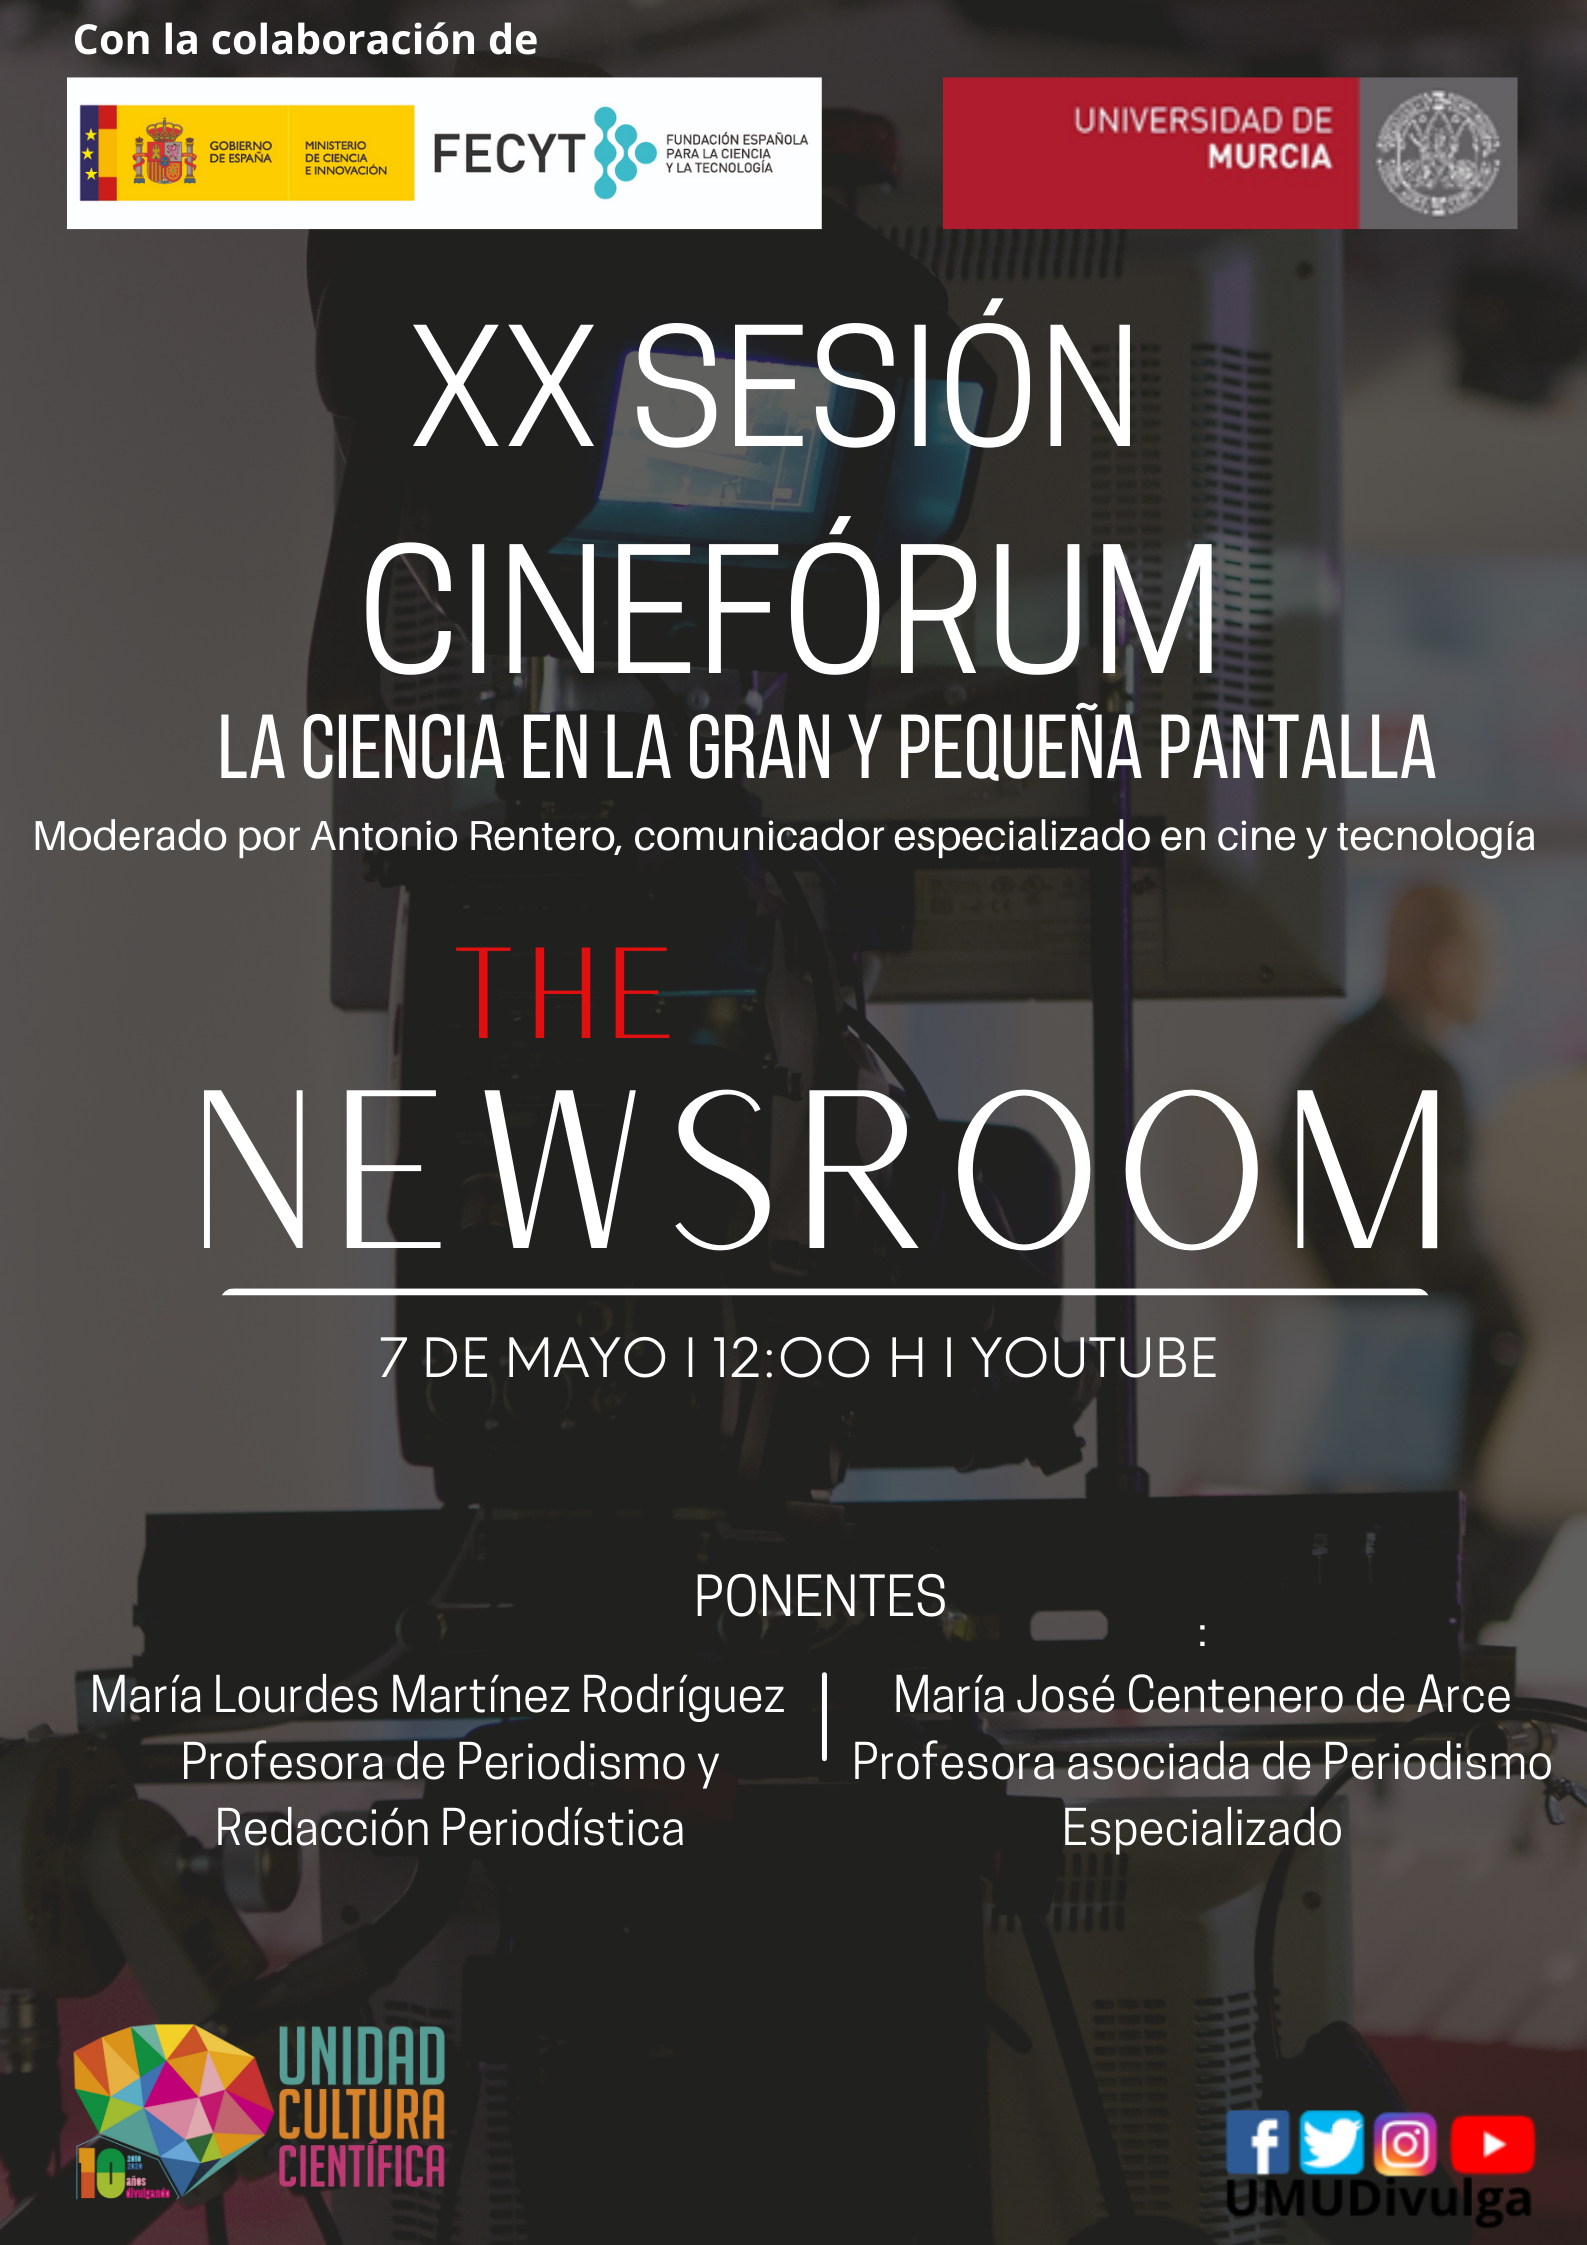 La nueva sesión del cinefórum “la ciencia en la gran y pequeña pantalla” de la UMU se adentra en el periodismo